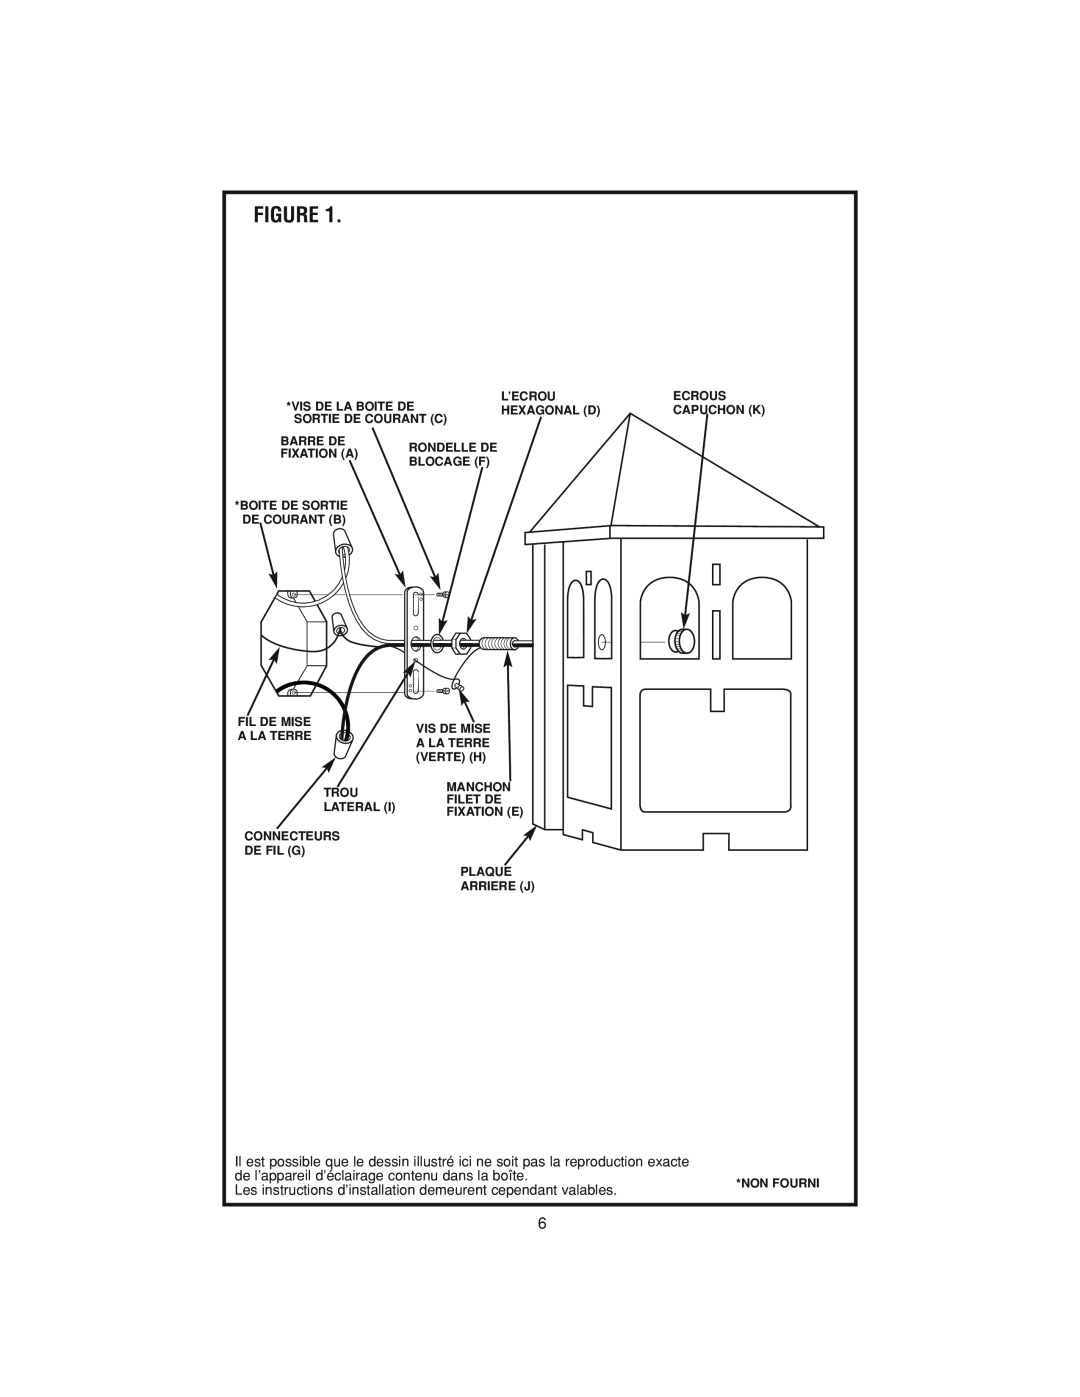 Westinghouse w-143 owner manual de l’appareil d’éclairage contenu dans la boîte 